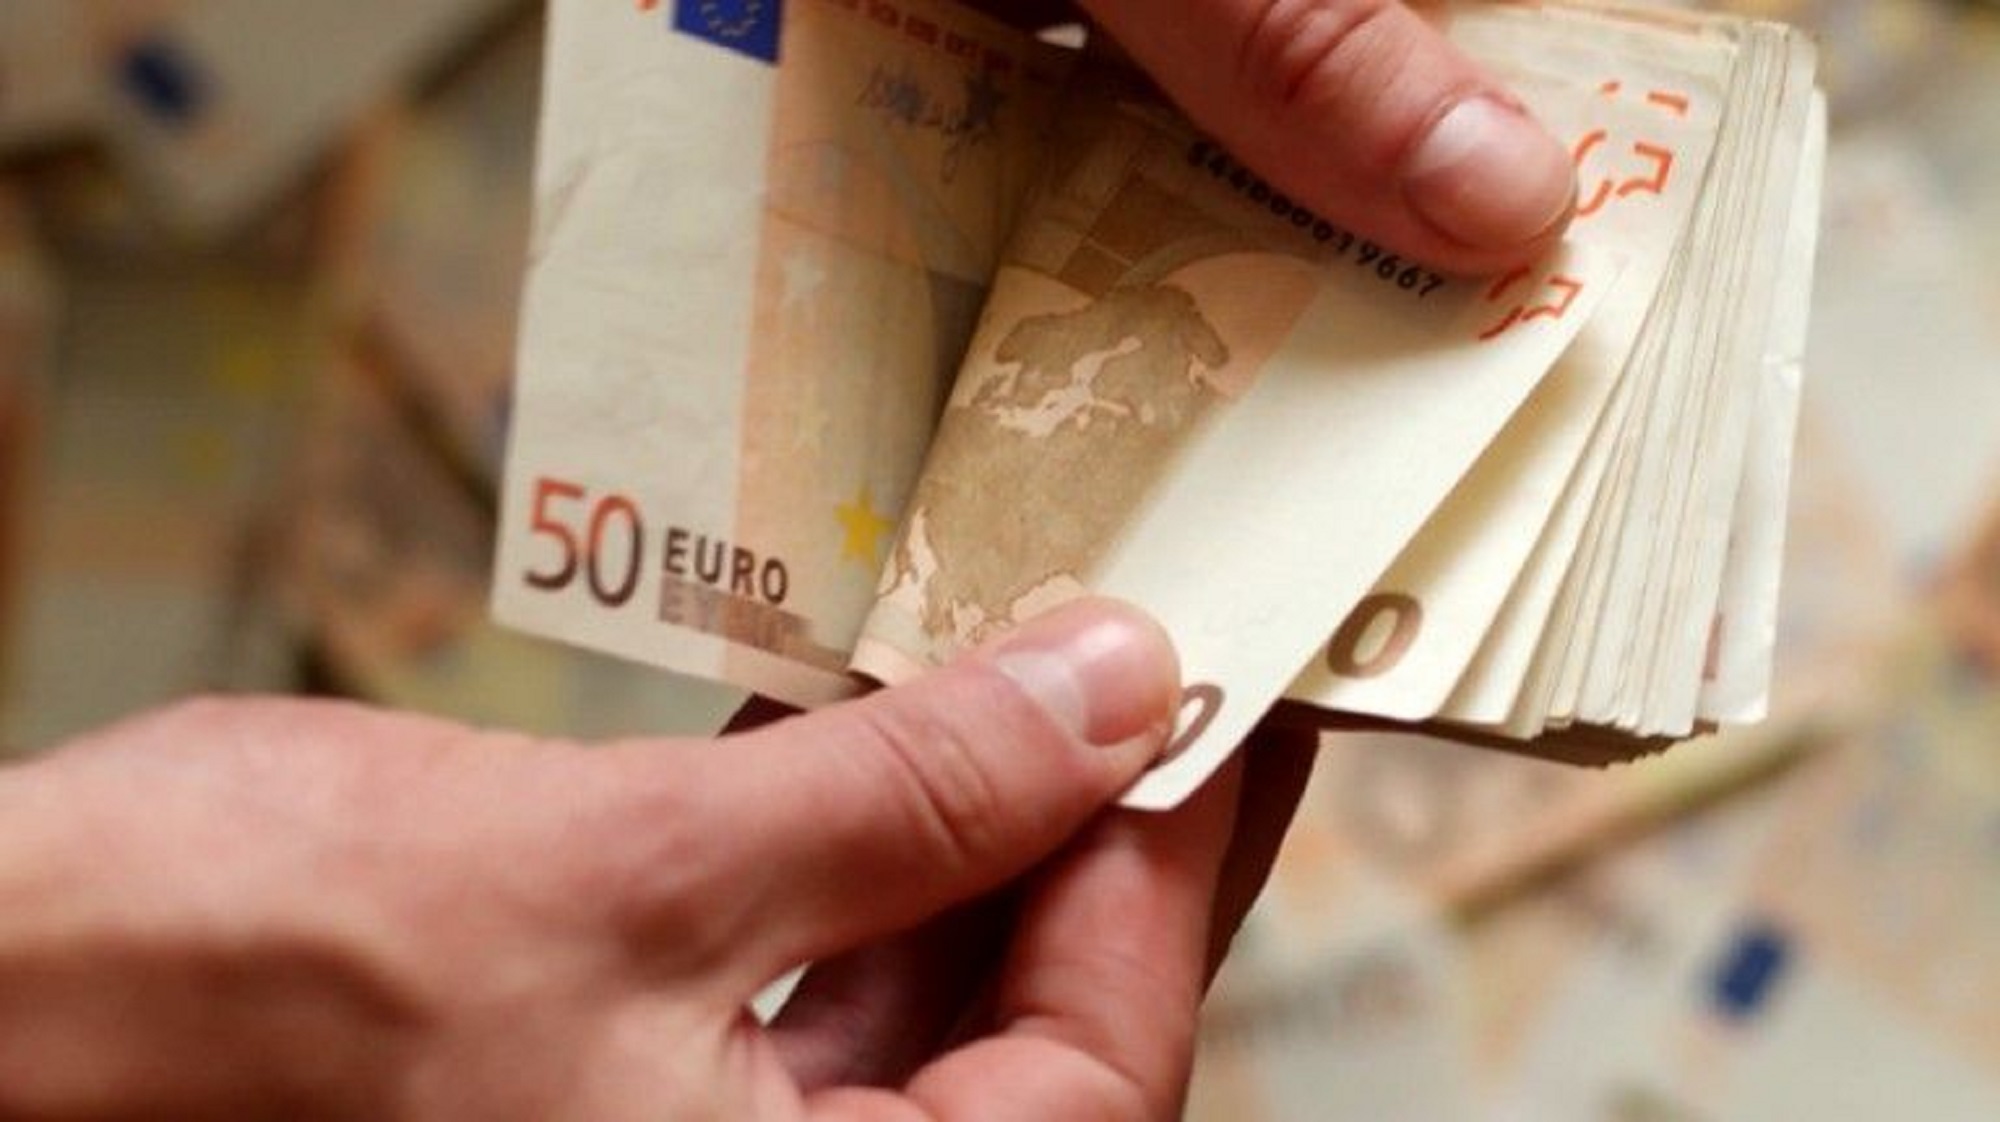 Youth Pass: Στις 9 Νοεμβρίου ξεκινούν οι αιτήσεις για τα 150 ευρώ - Πώς θα γίνει η καταβολή